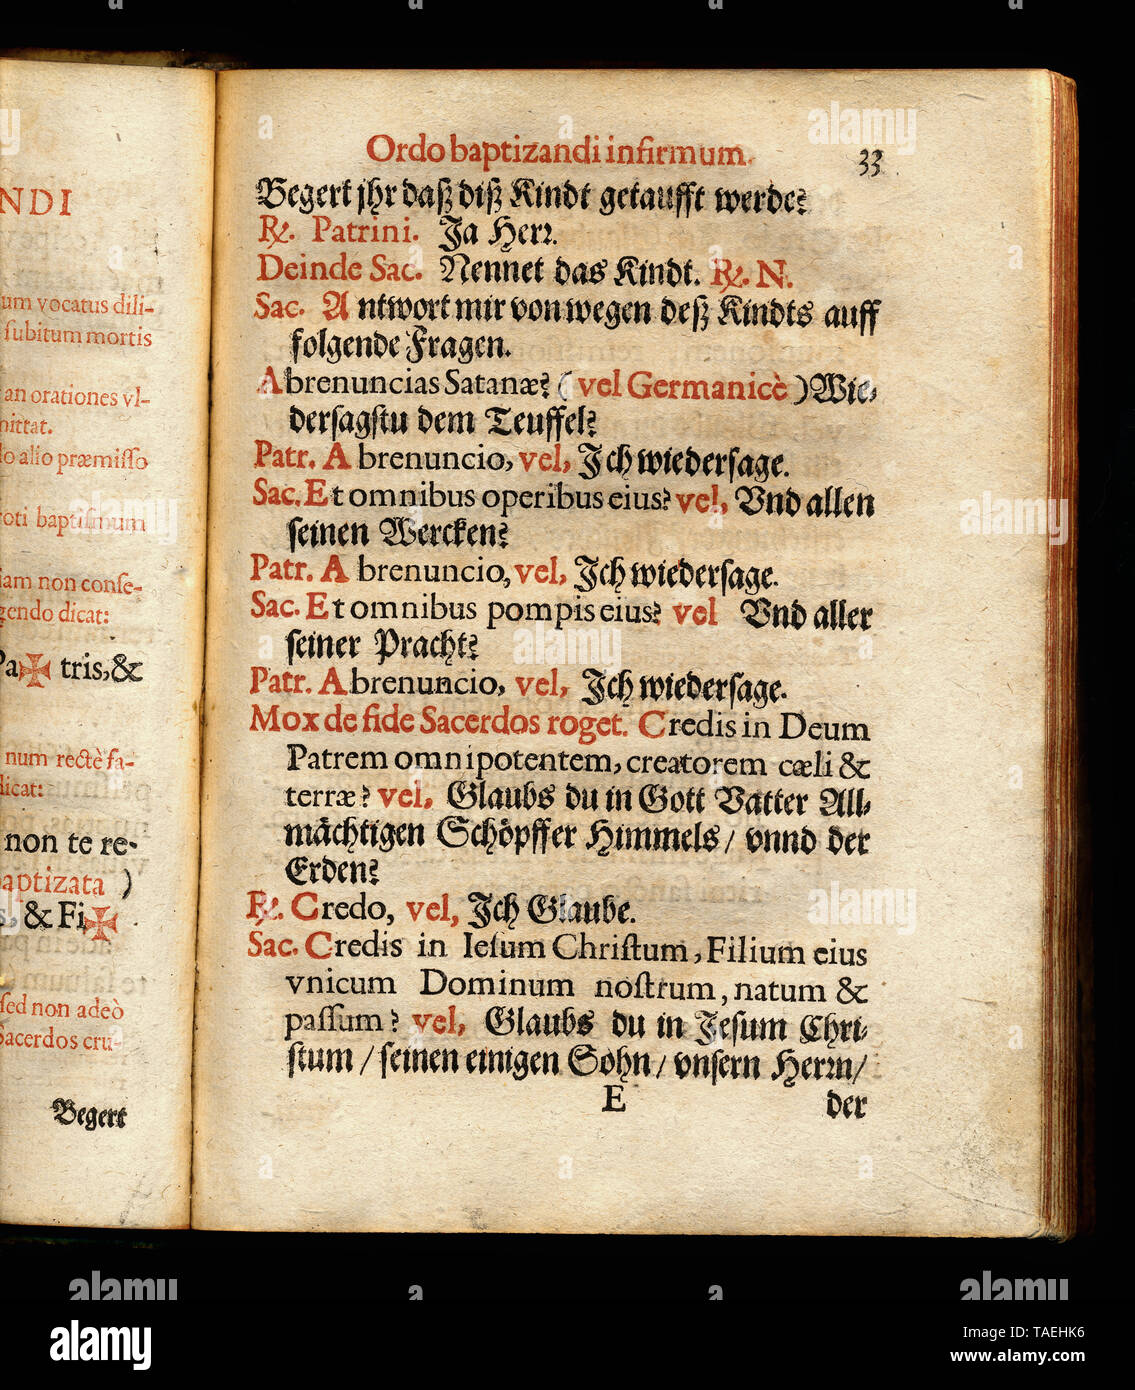 Historisches Kirchenbuch aus Köln, 1637, dialogo auf Deutsch und lateinisch, Taufe eines Kranken Foto Stock